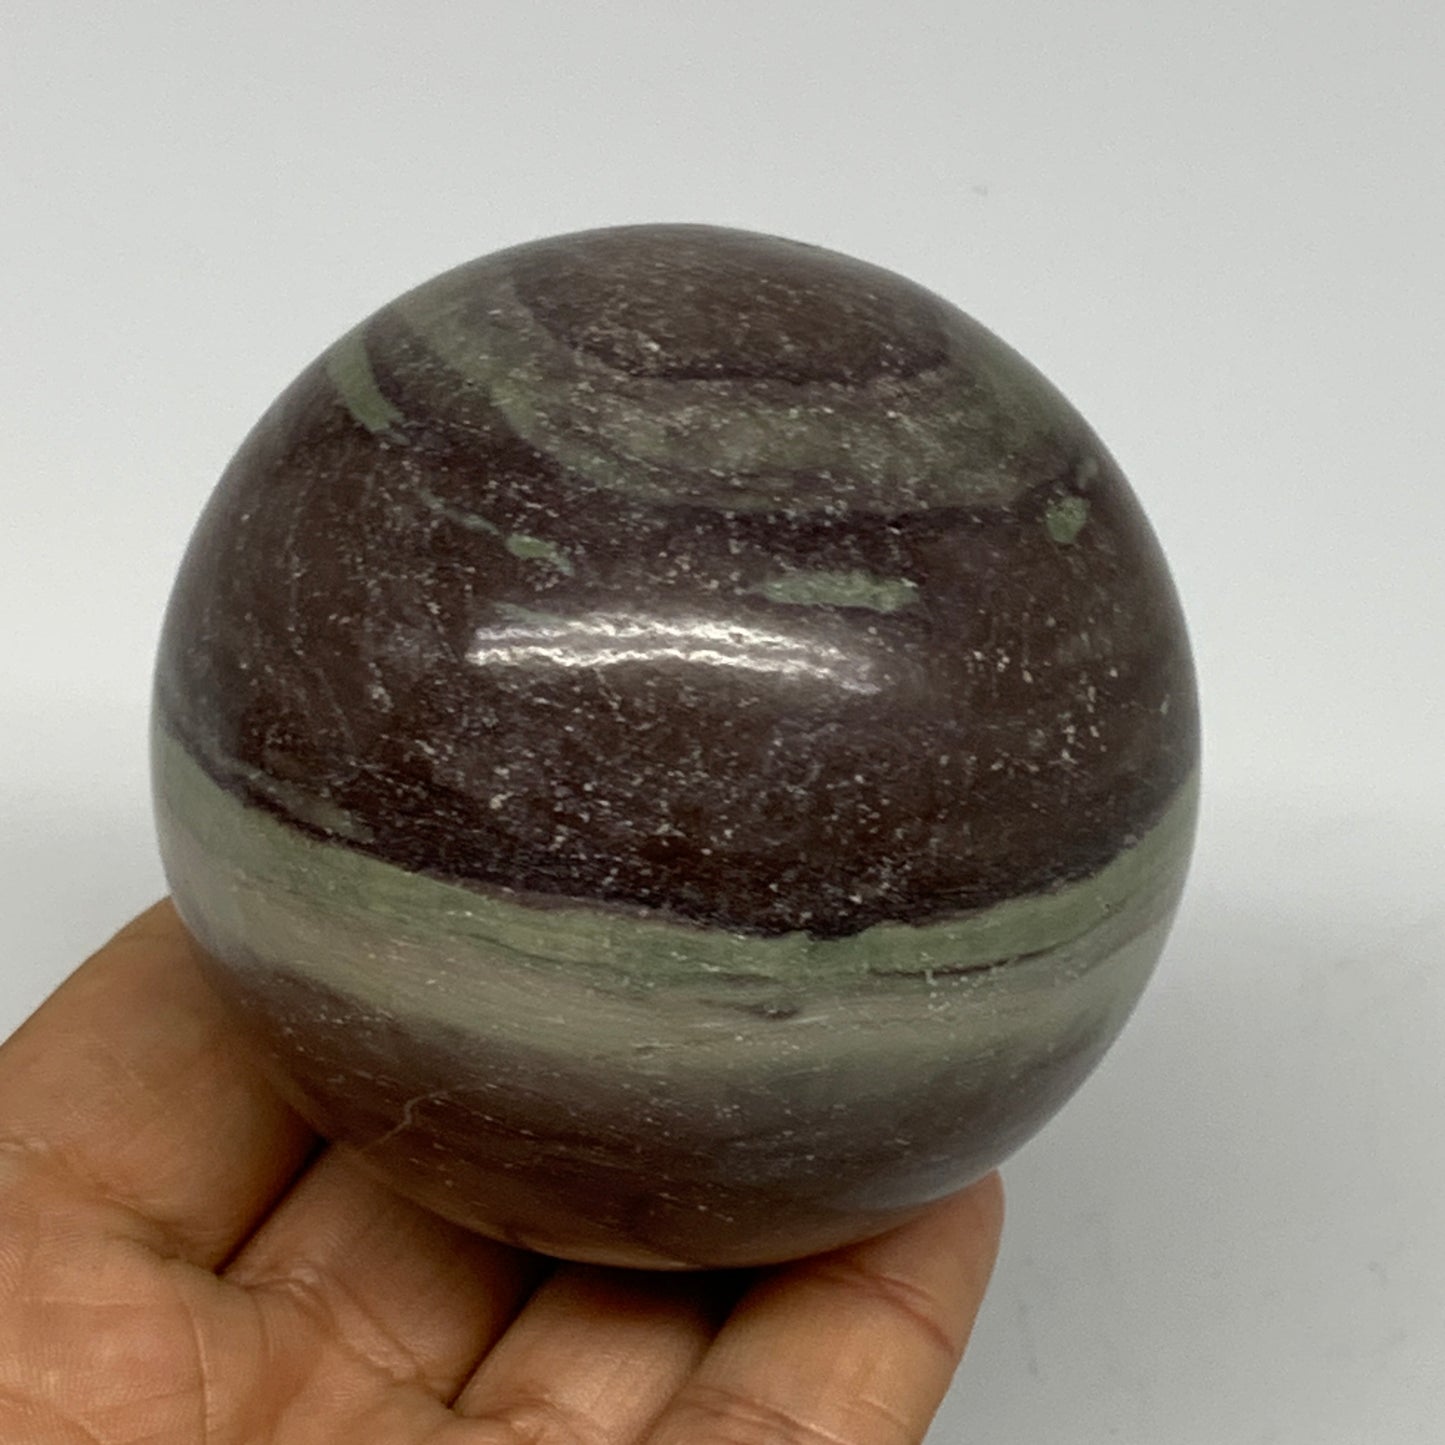 0.99 lbs, 2.6"(67mm) Red Jasper Sphere Gemstone,Healing Crystal, B25426